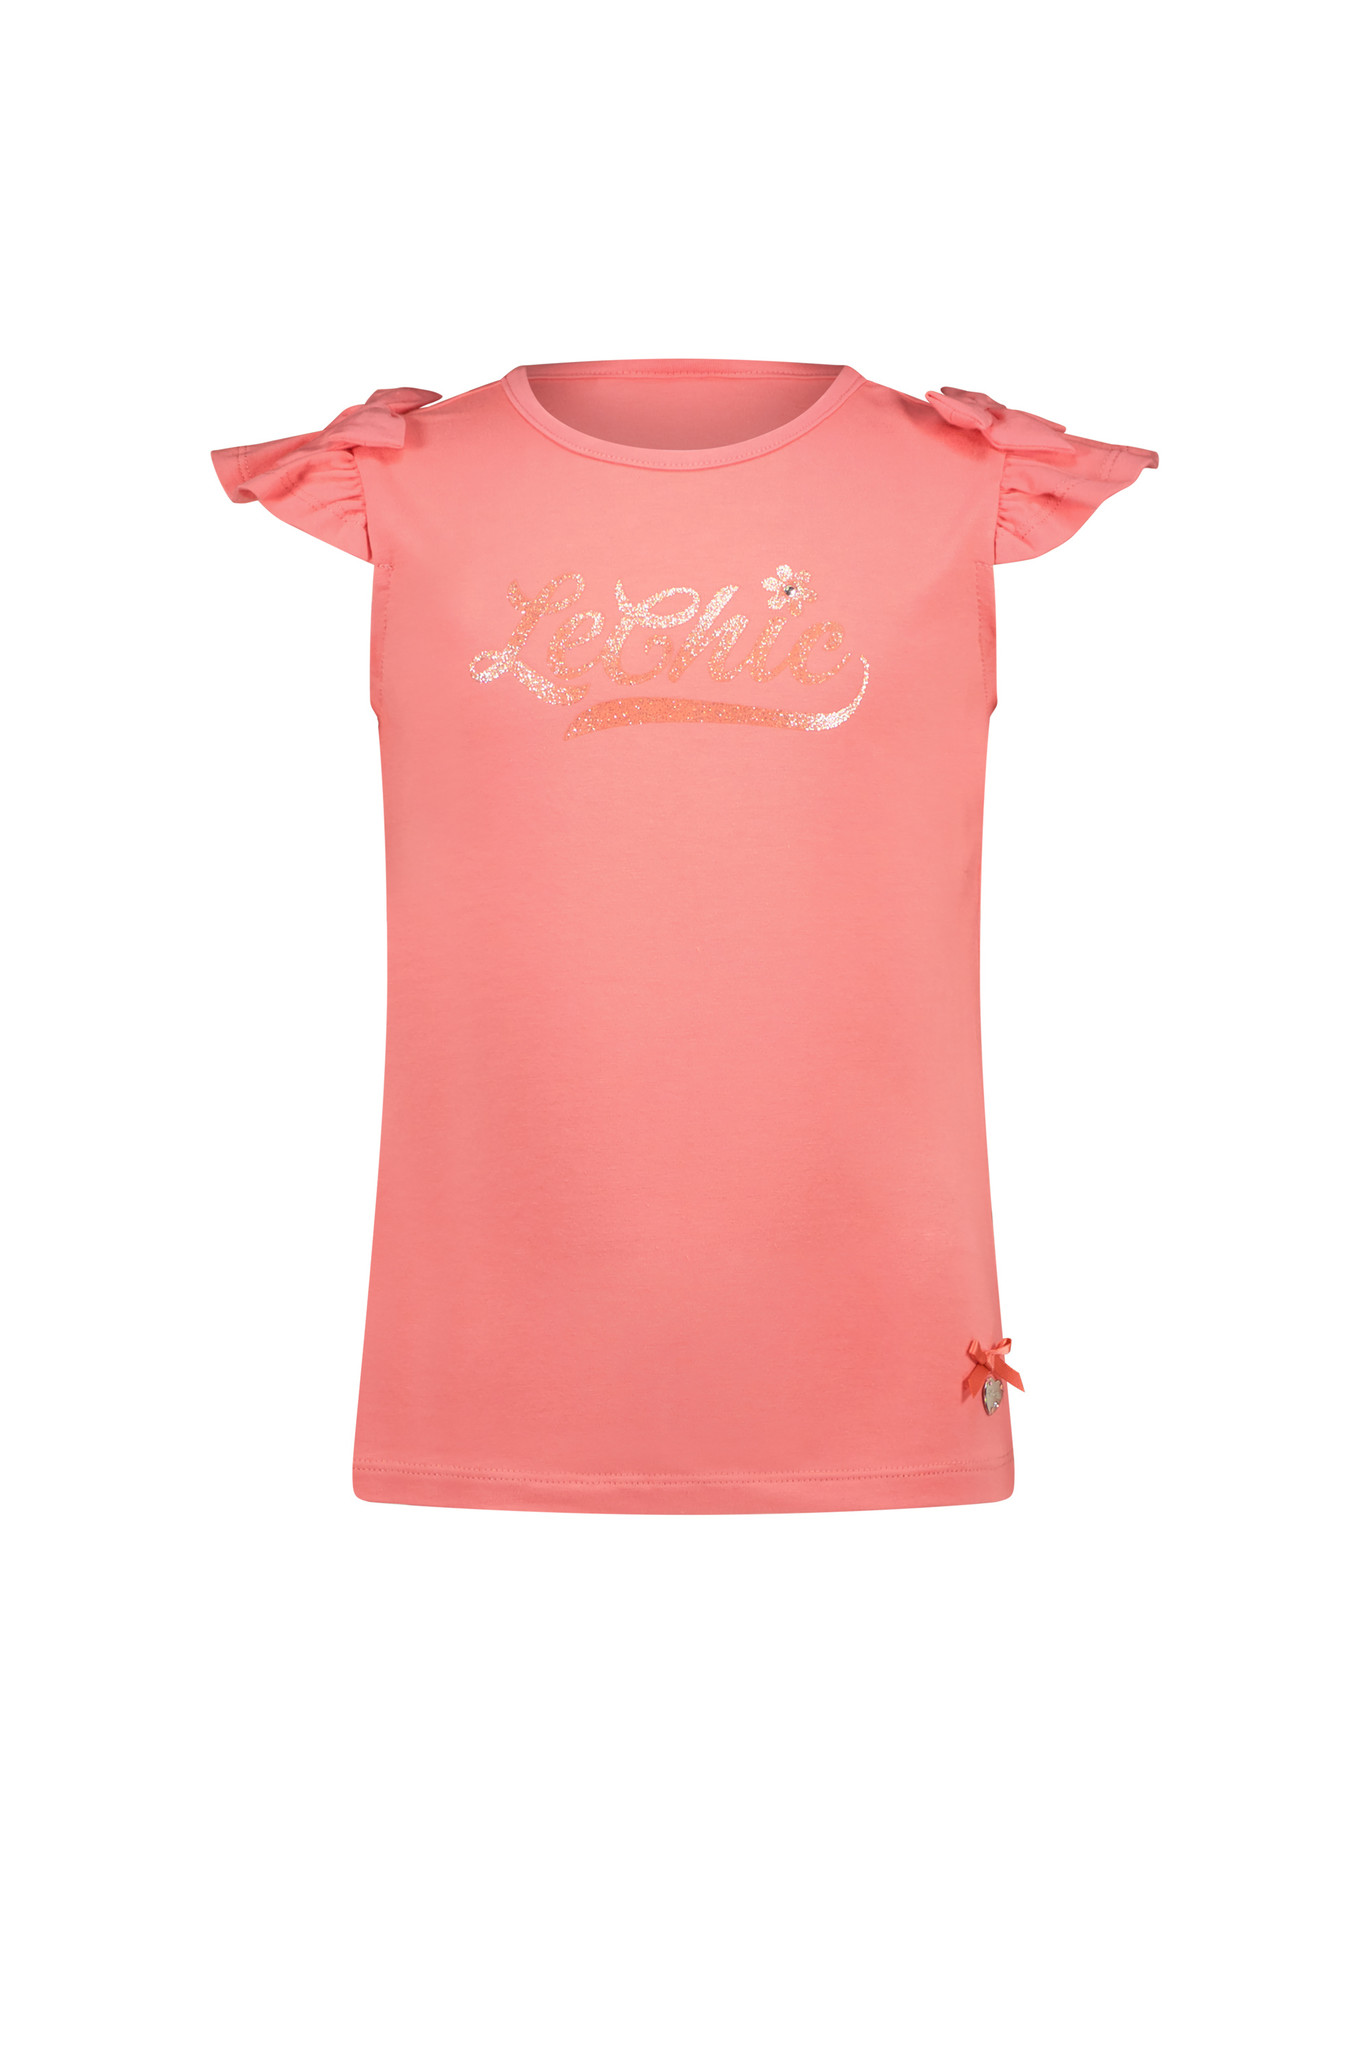 Le Chic Meisjes t-shirt logo - Nem - Tea roze